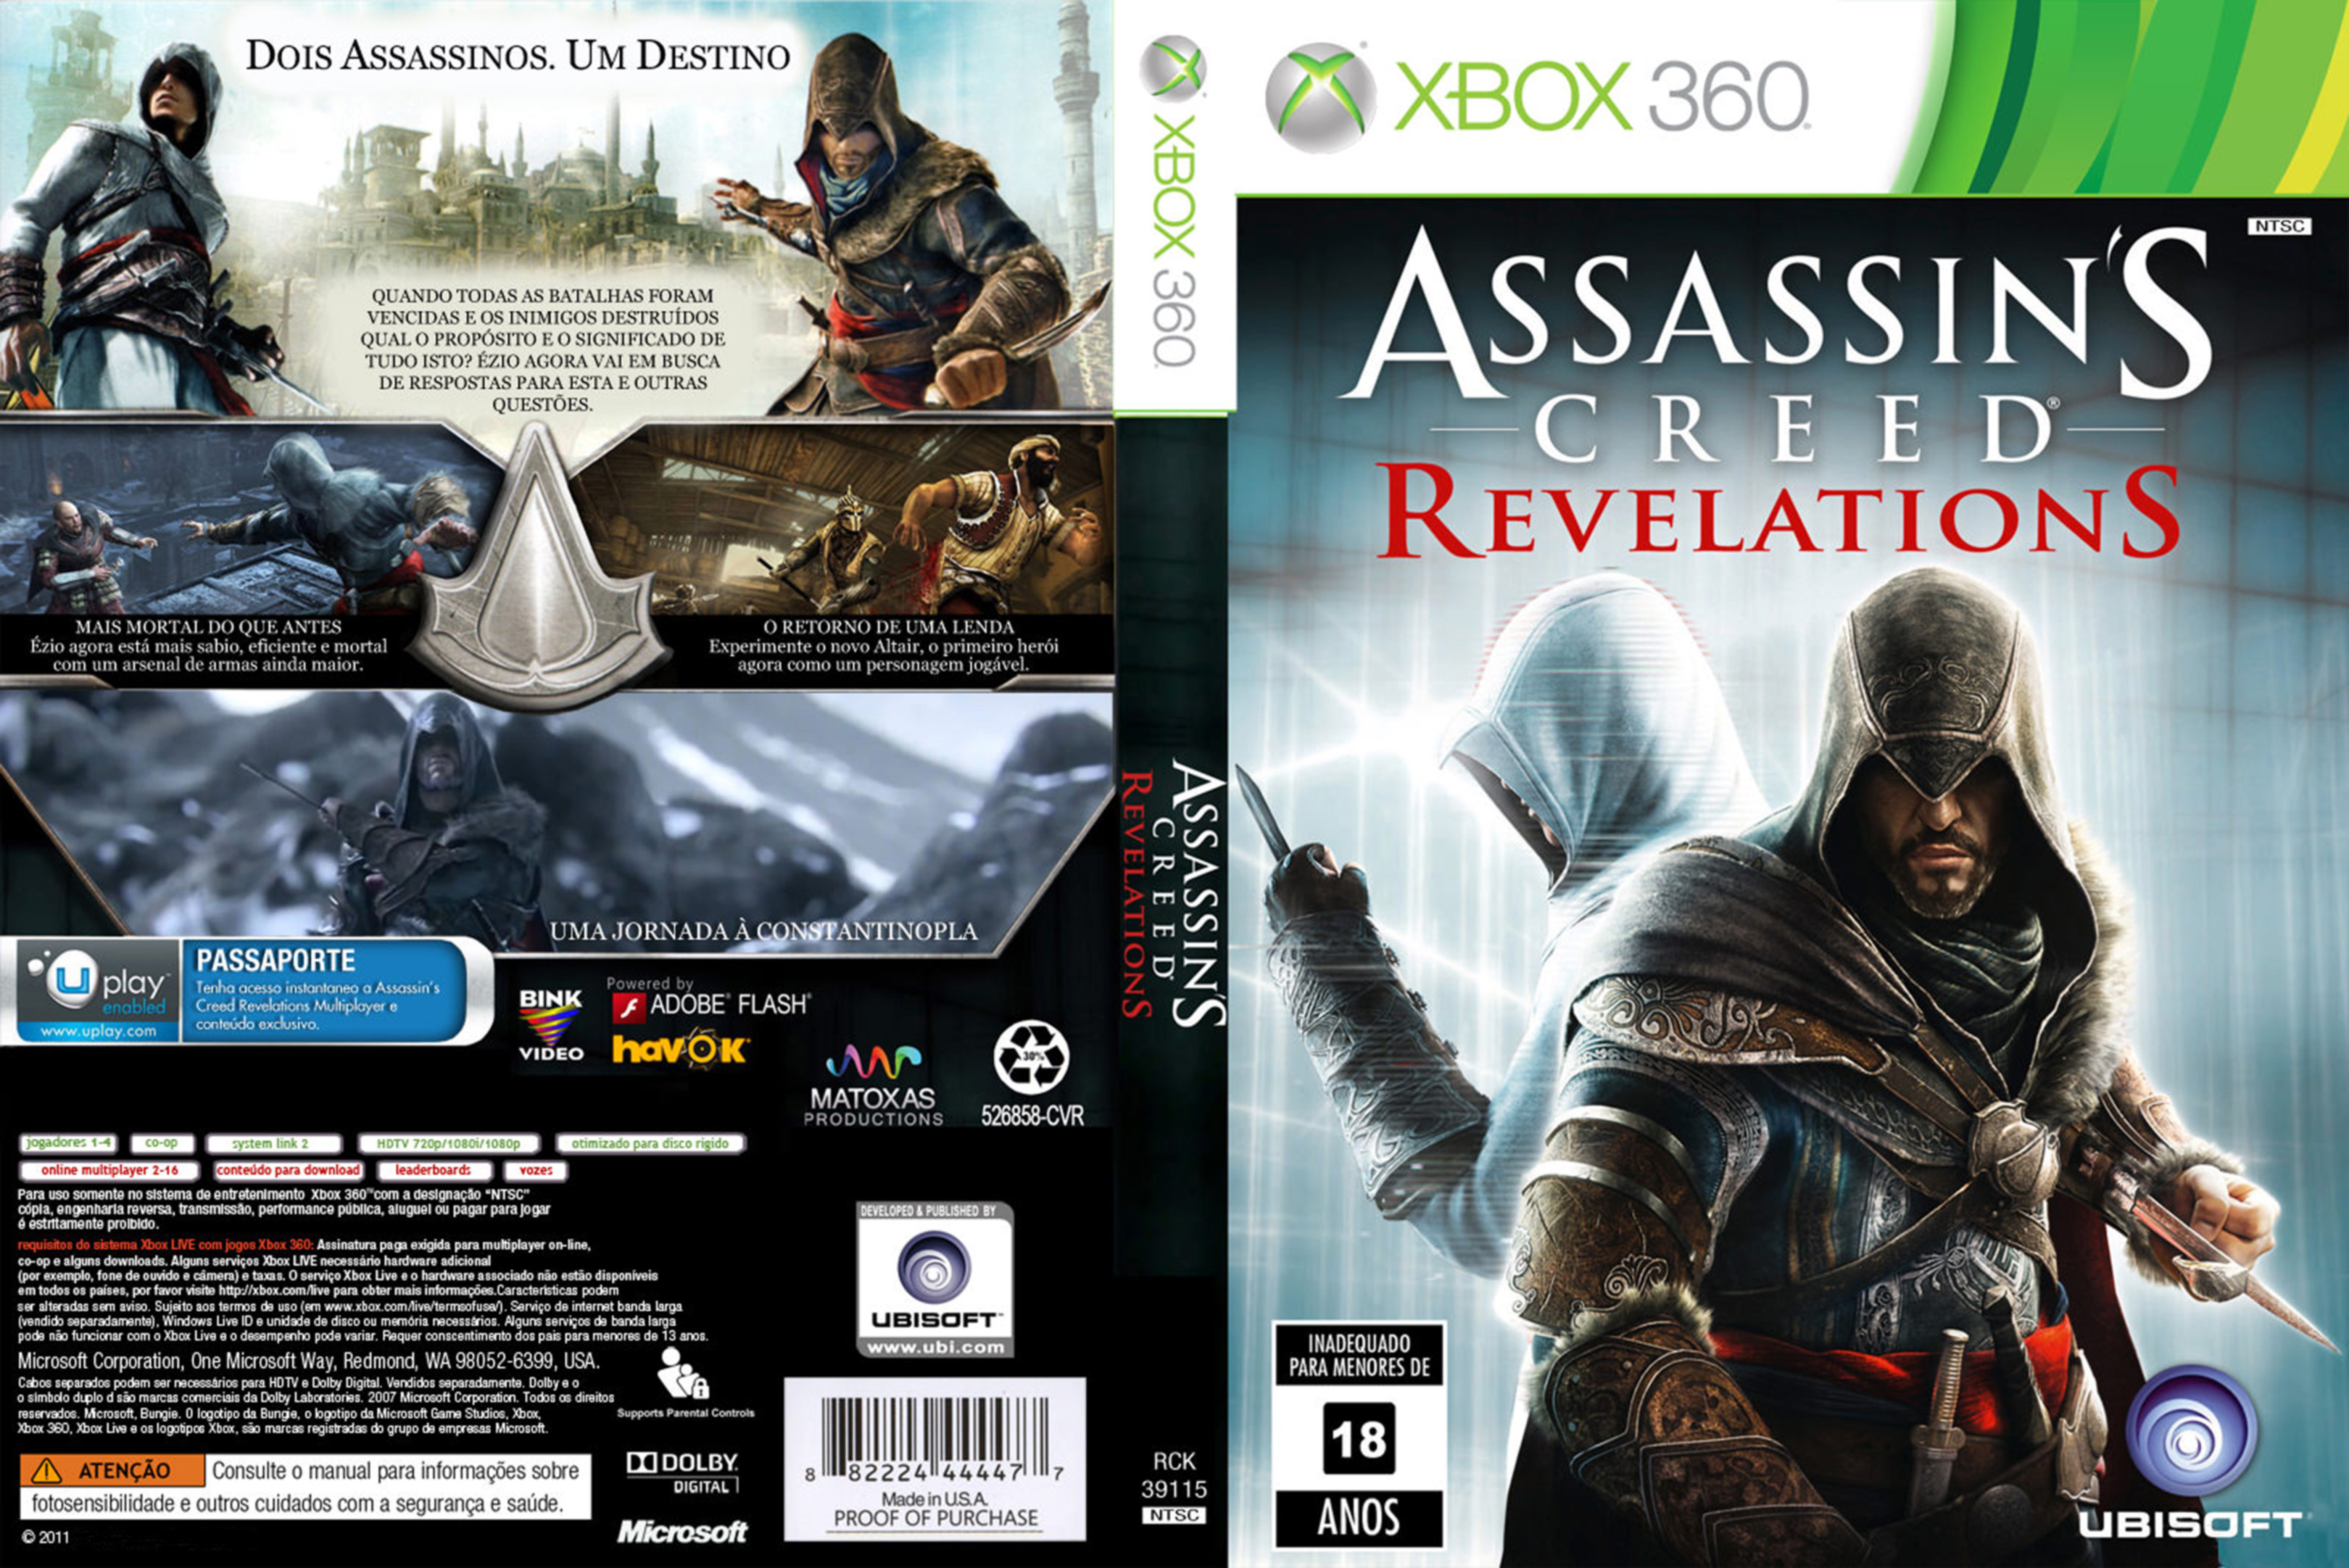 Literal Assassins Creed Revelations Trailer Dublado Pt-Br 